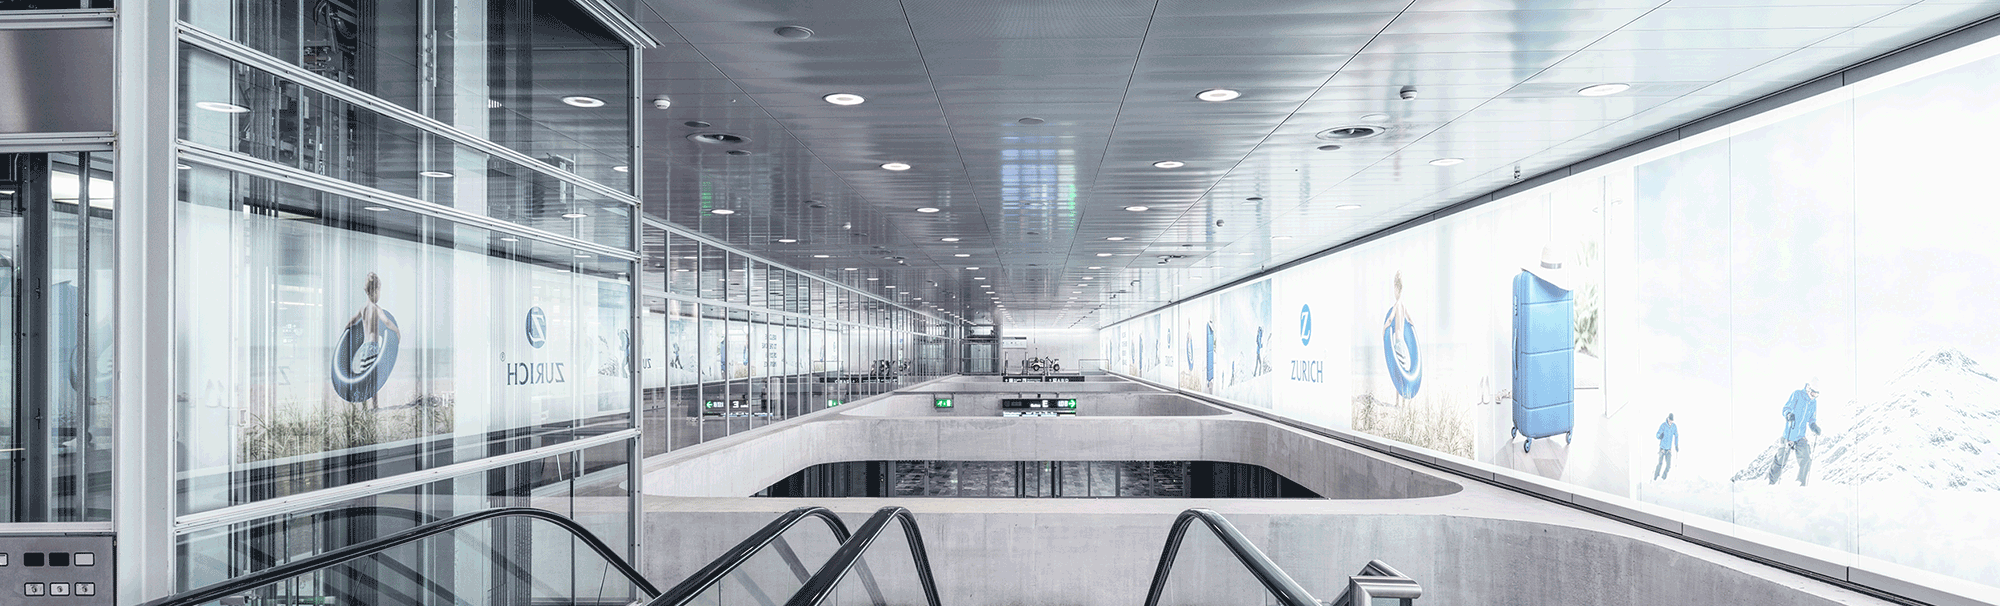 Bild einer Halle am Zürcher Flughafen, als Symbolbild für Total Brand Visibility & Content